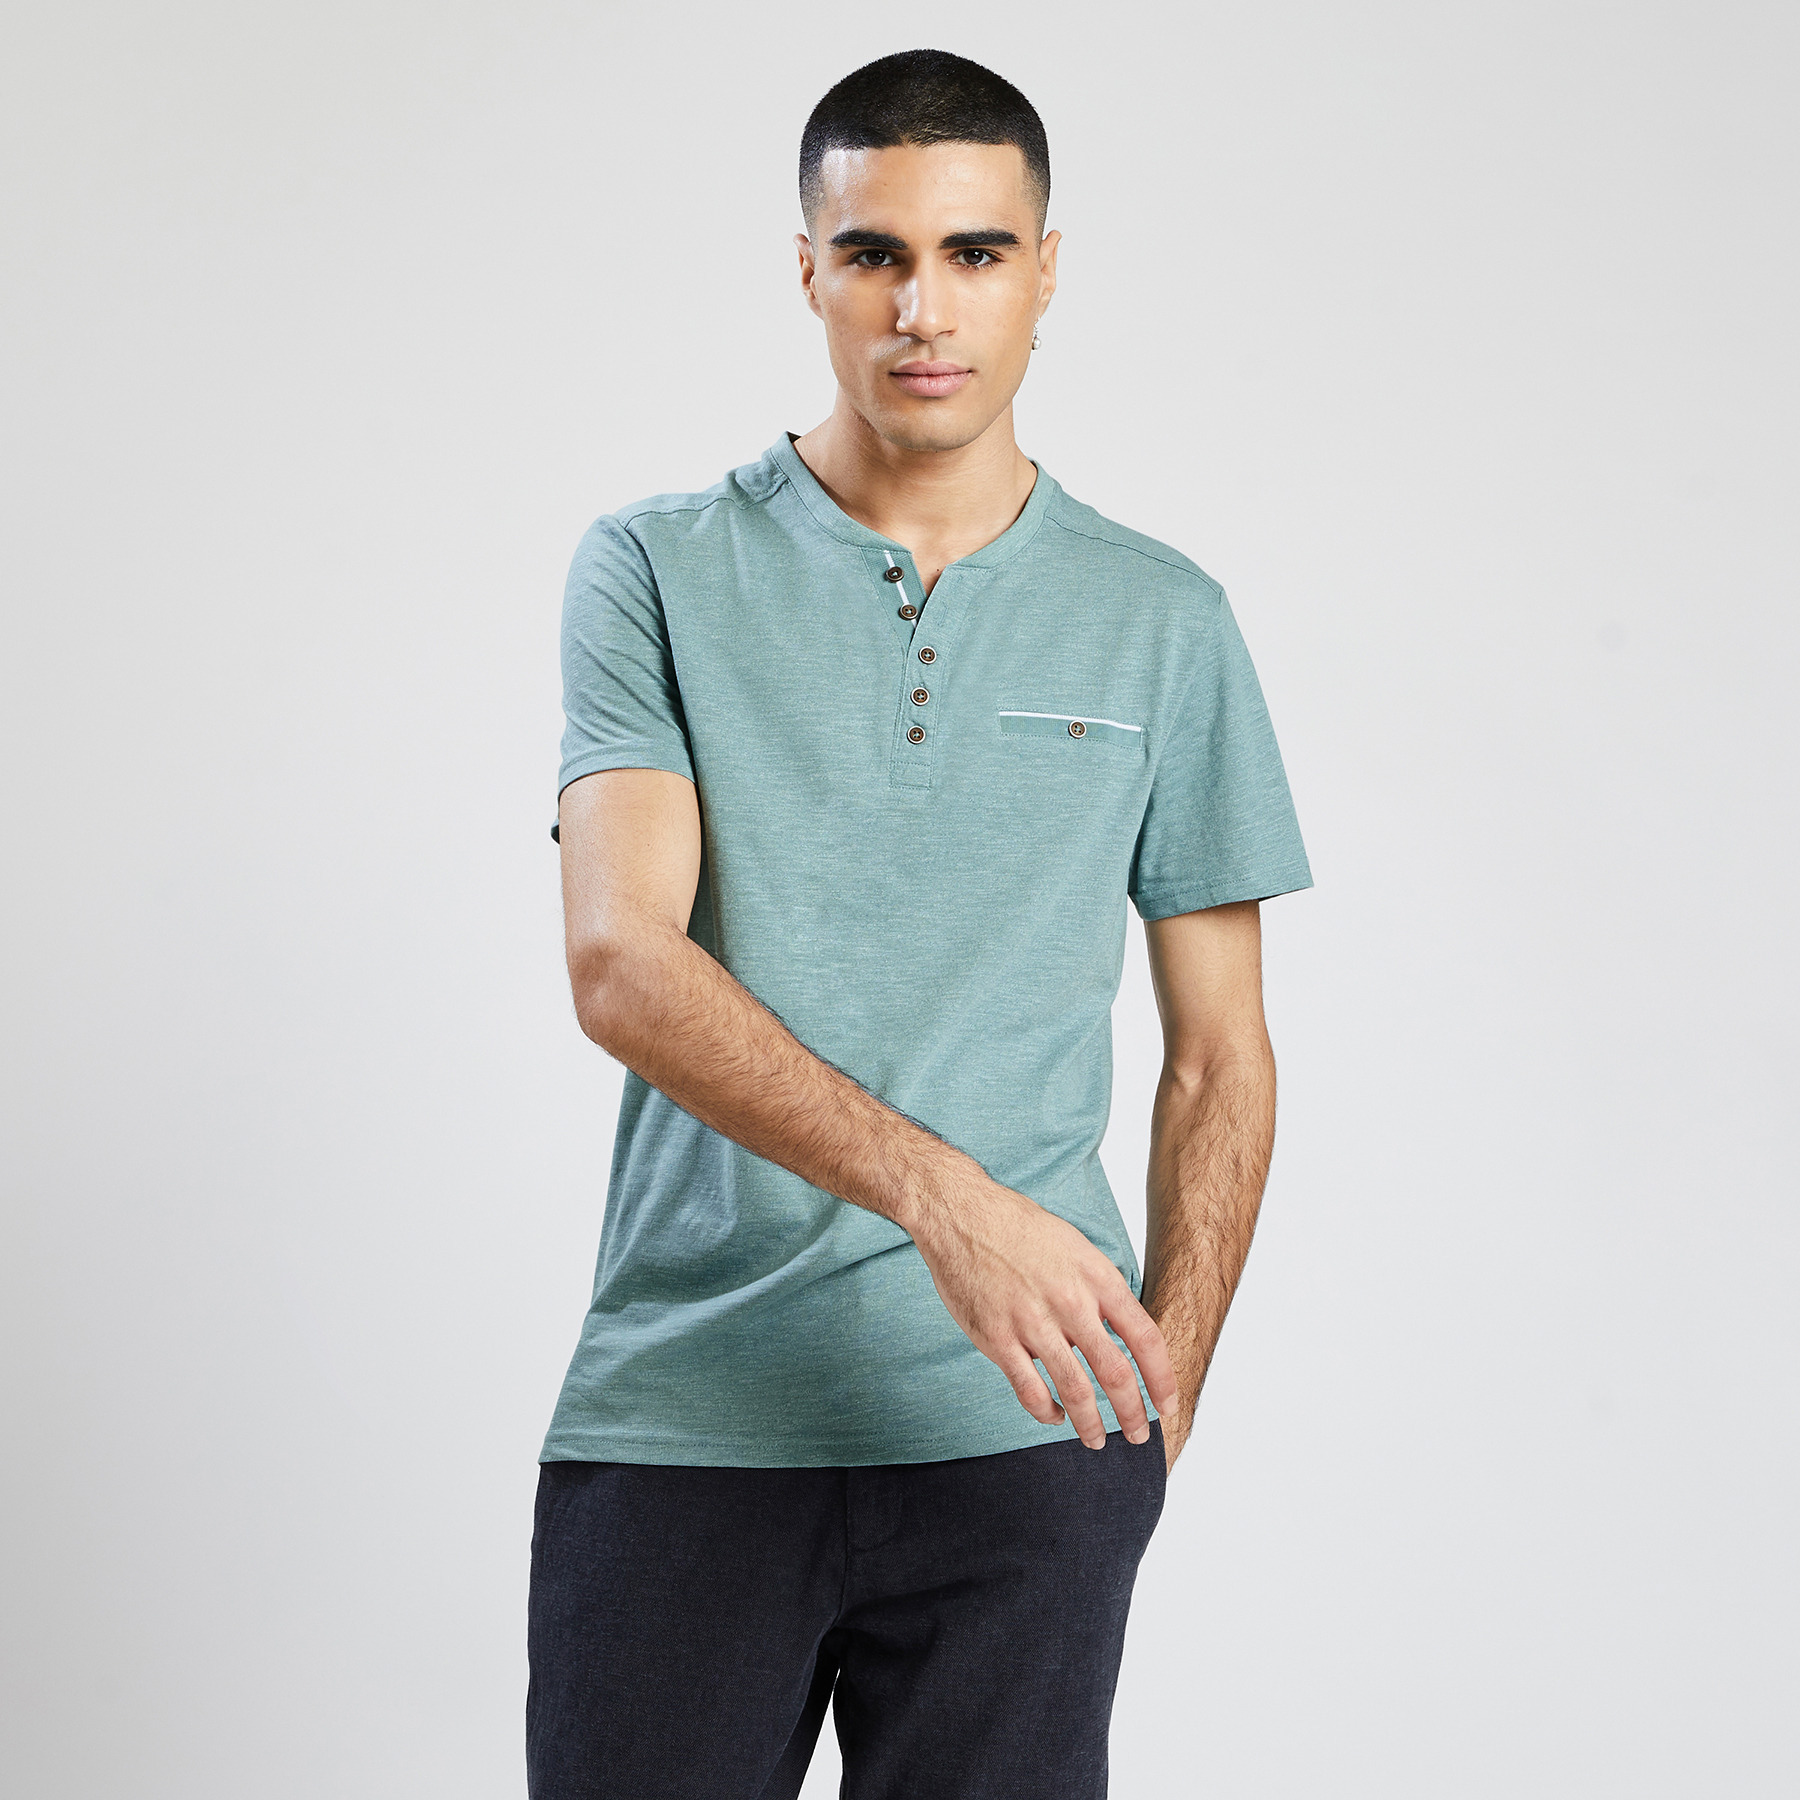 Jules - Tee shirt col tunisien vert/kaki homme